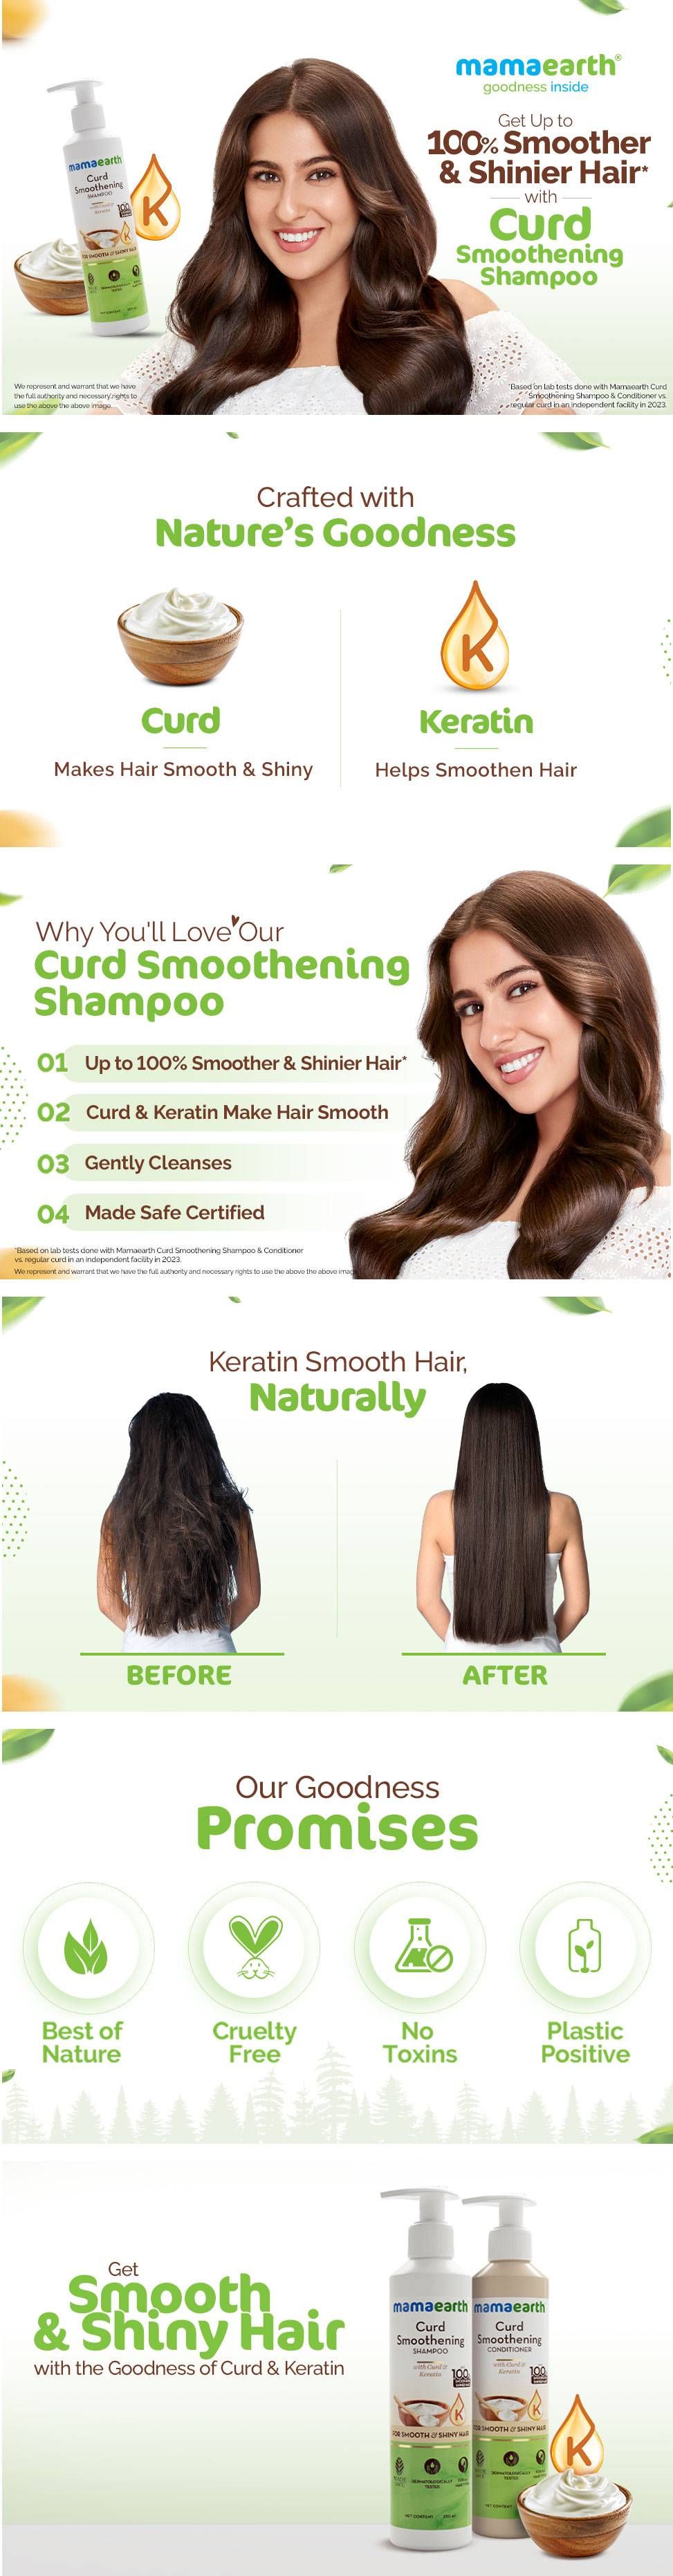 Hair smoothening | Hair smoothening, Hair, Hair styles